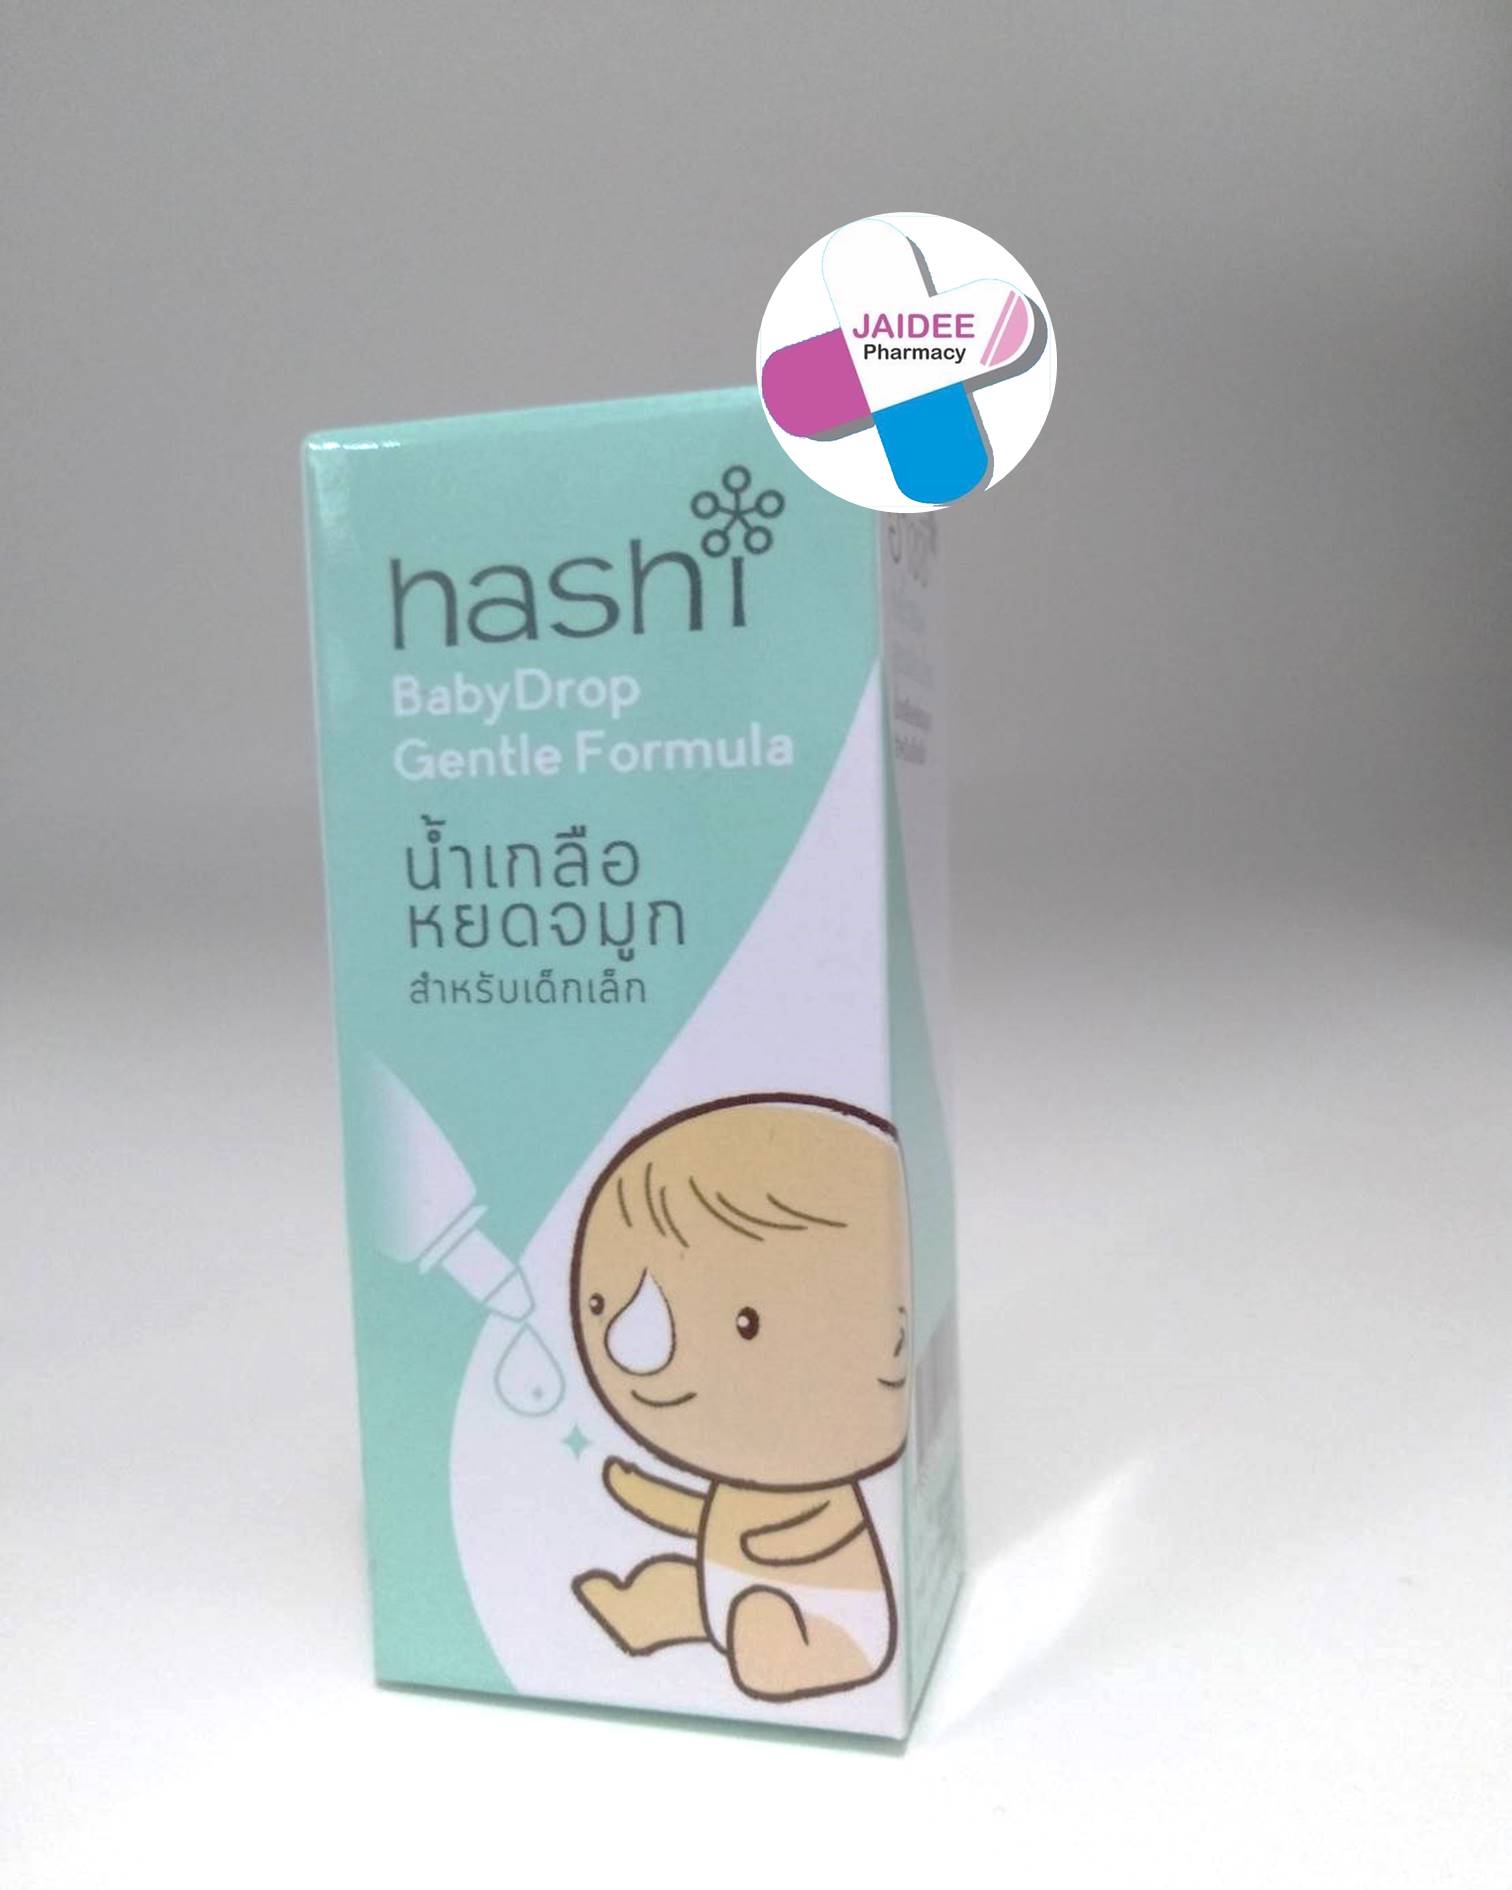 Hashi Baby Drop 4 ML น้ำเกลือหยดจมูก (สีเขียว)  สำหรับเด็กเล็ก ช่วยให้น้ำมูกนิ่ม และสูดออกง่าย